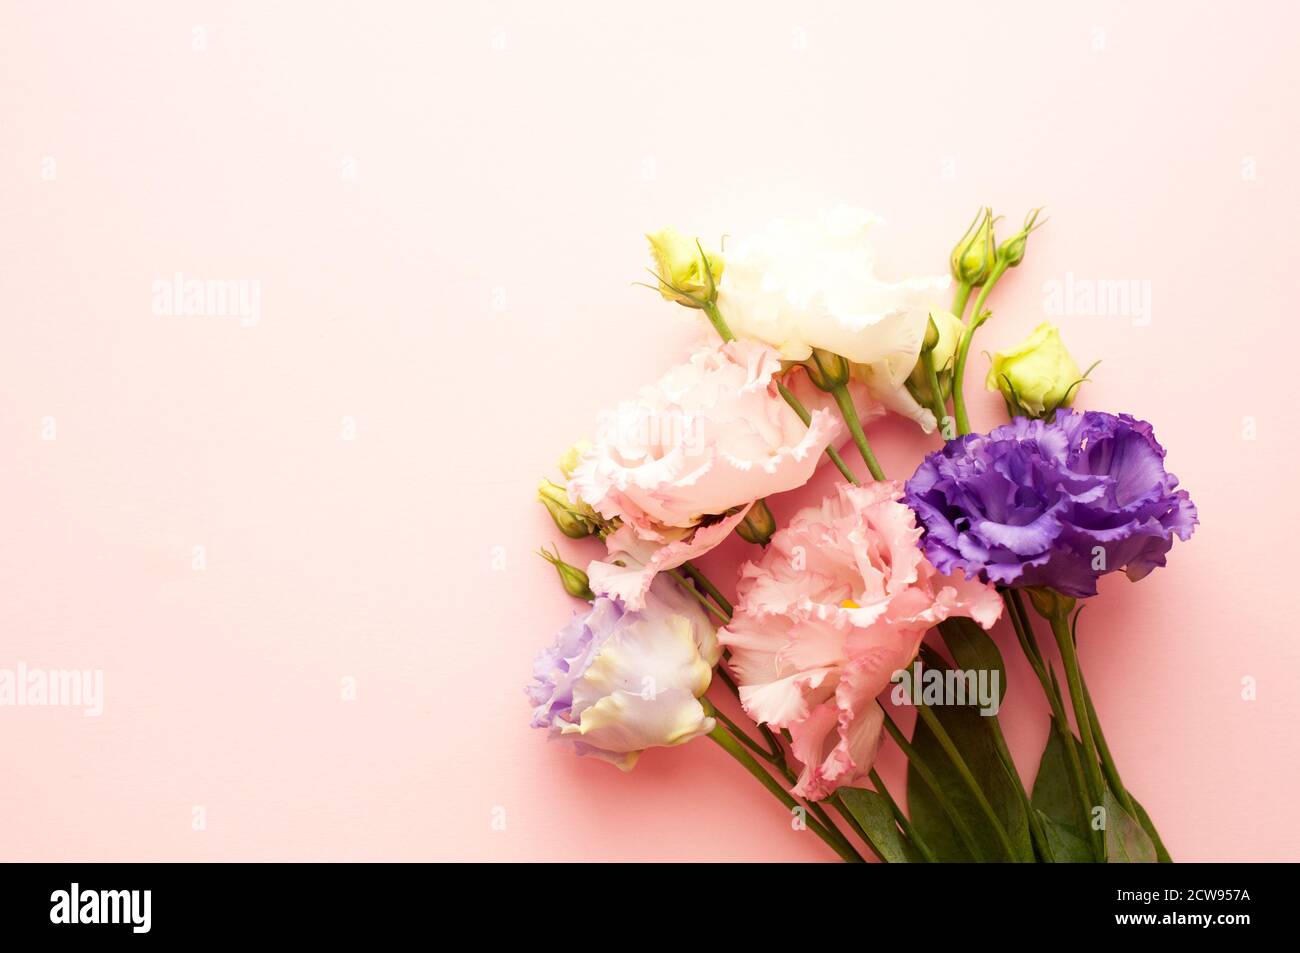 Belles fleurs d'eustoma rose et blanc (lisianthus) en pleine floraison avec des feuilles vertes. Bouquet de fleurs sur fond rose. Banque D'Images